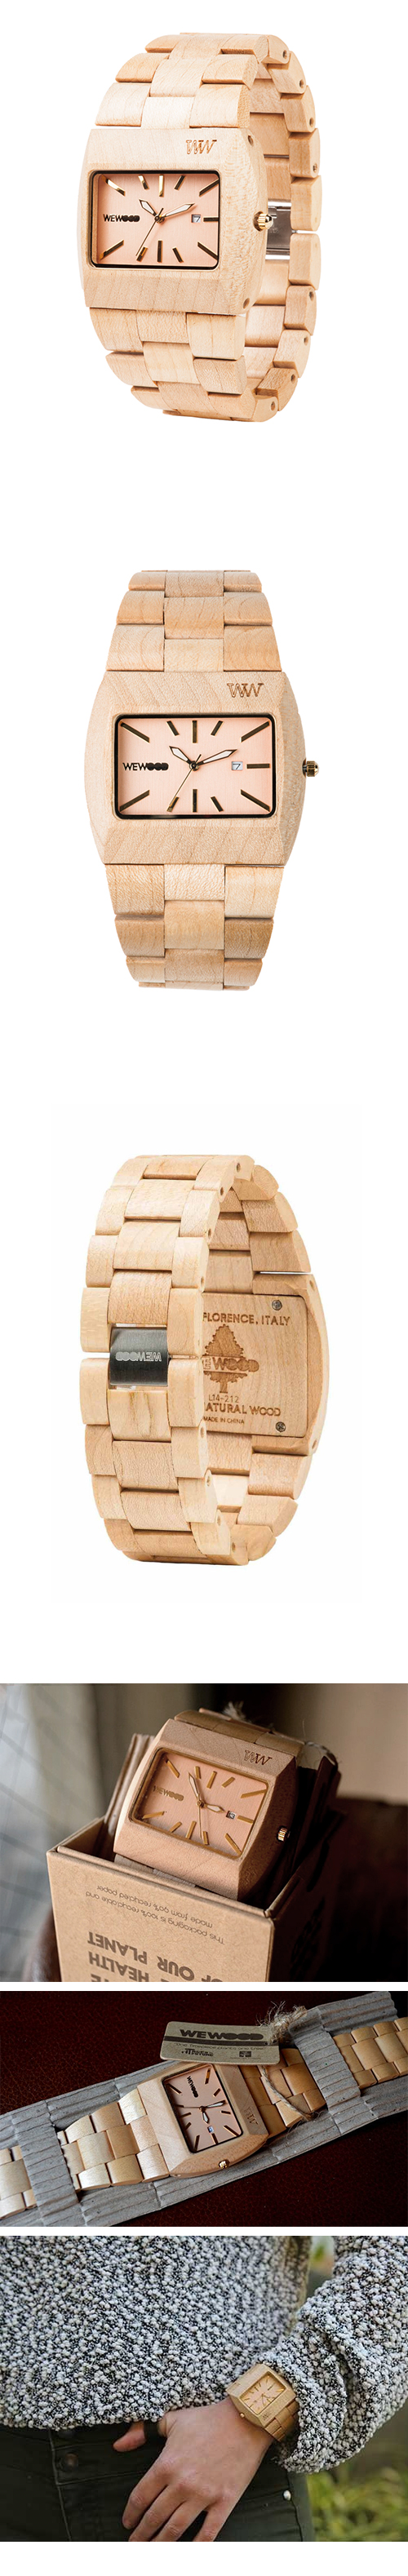 WEWOOD 義大利時尚木頭腕錶 方形錶款 Enif Beige